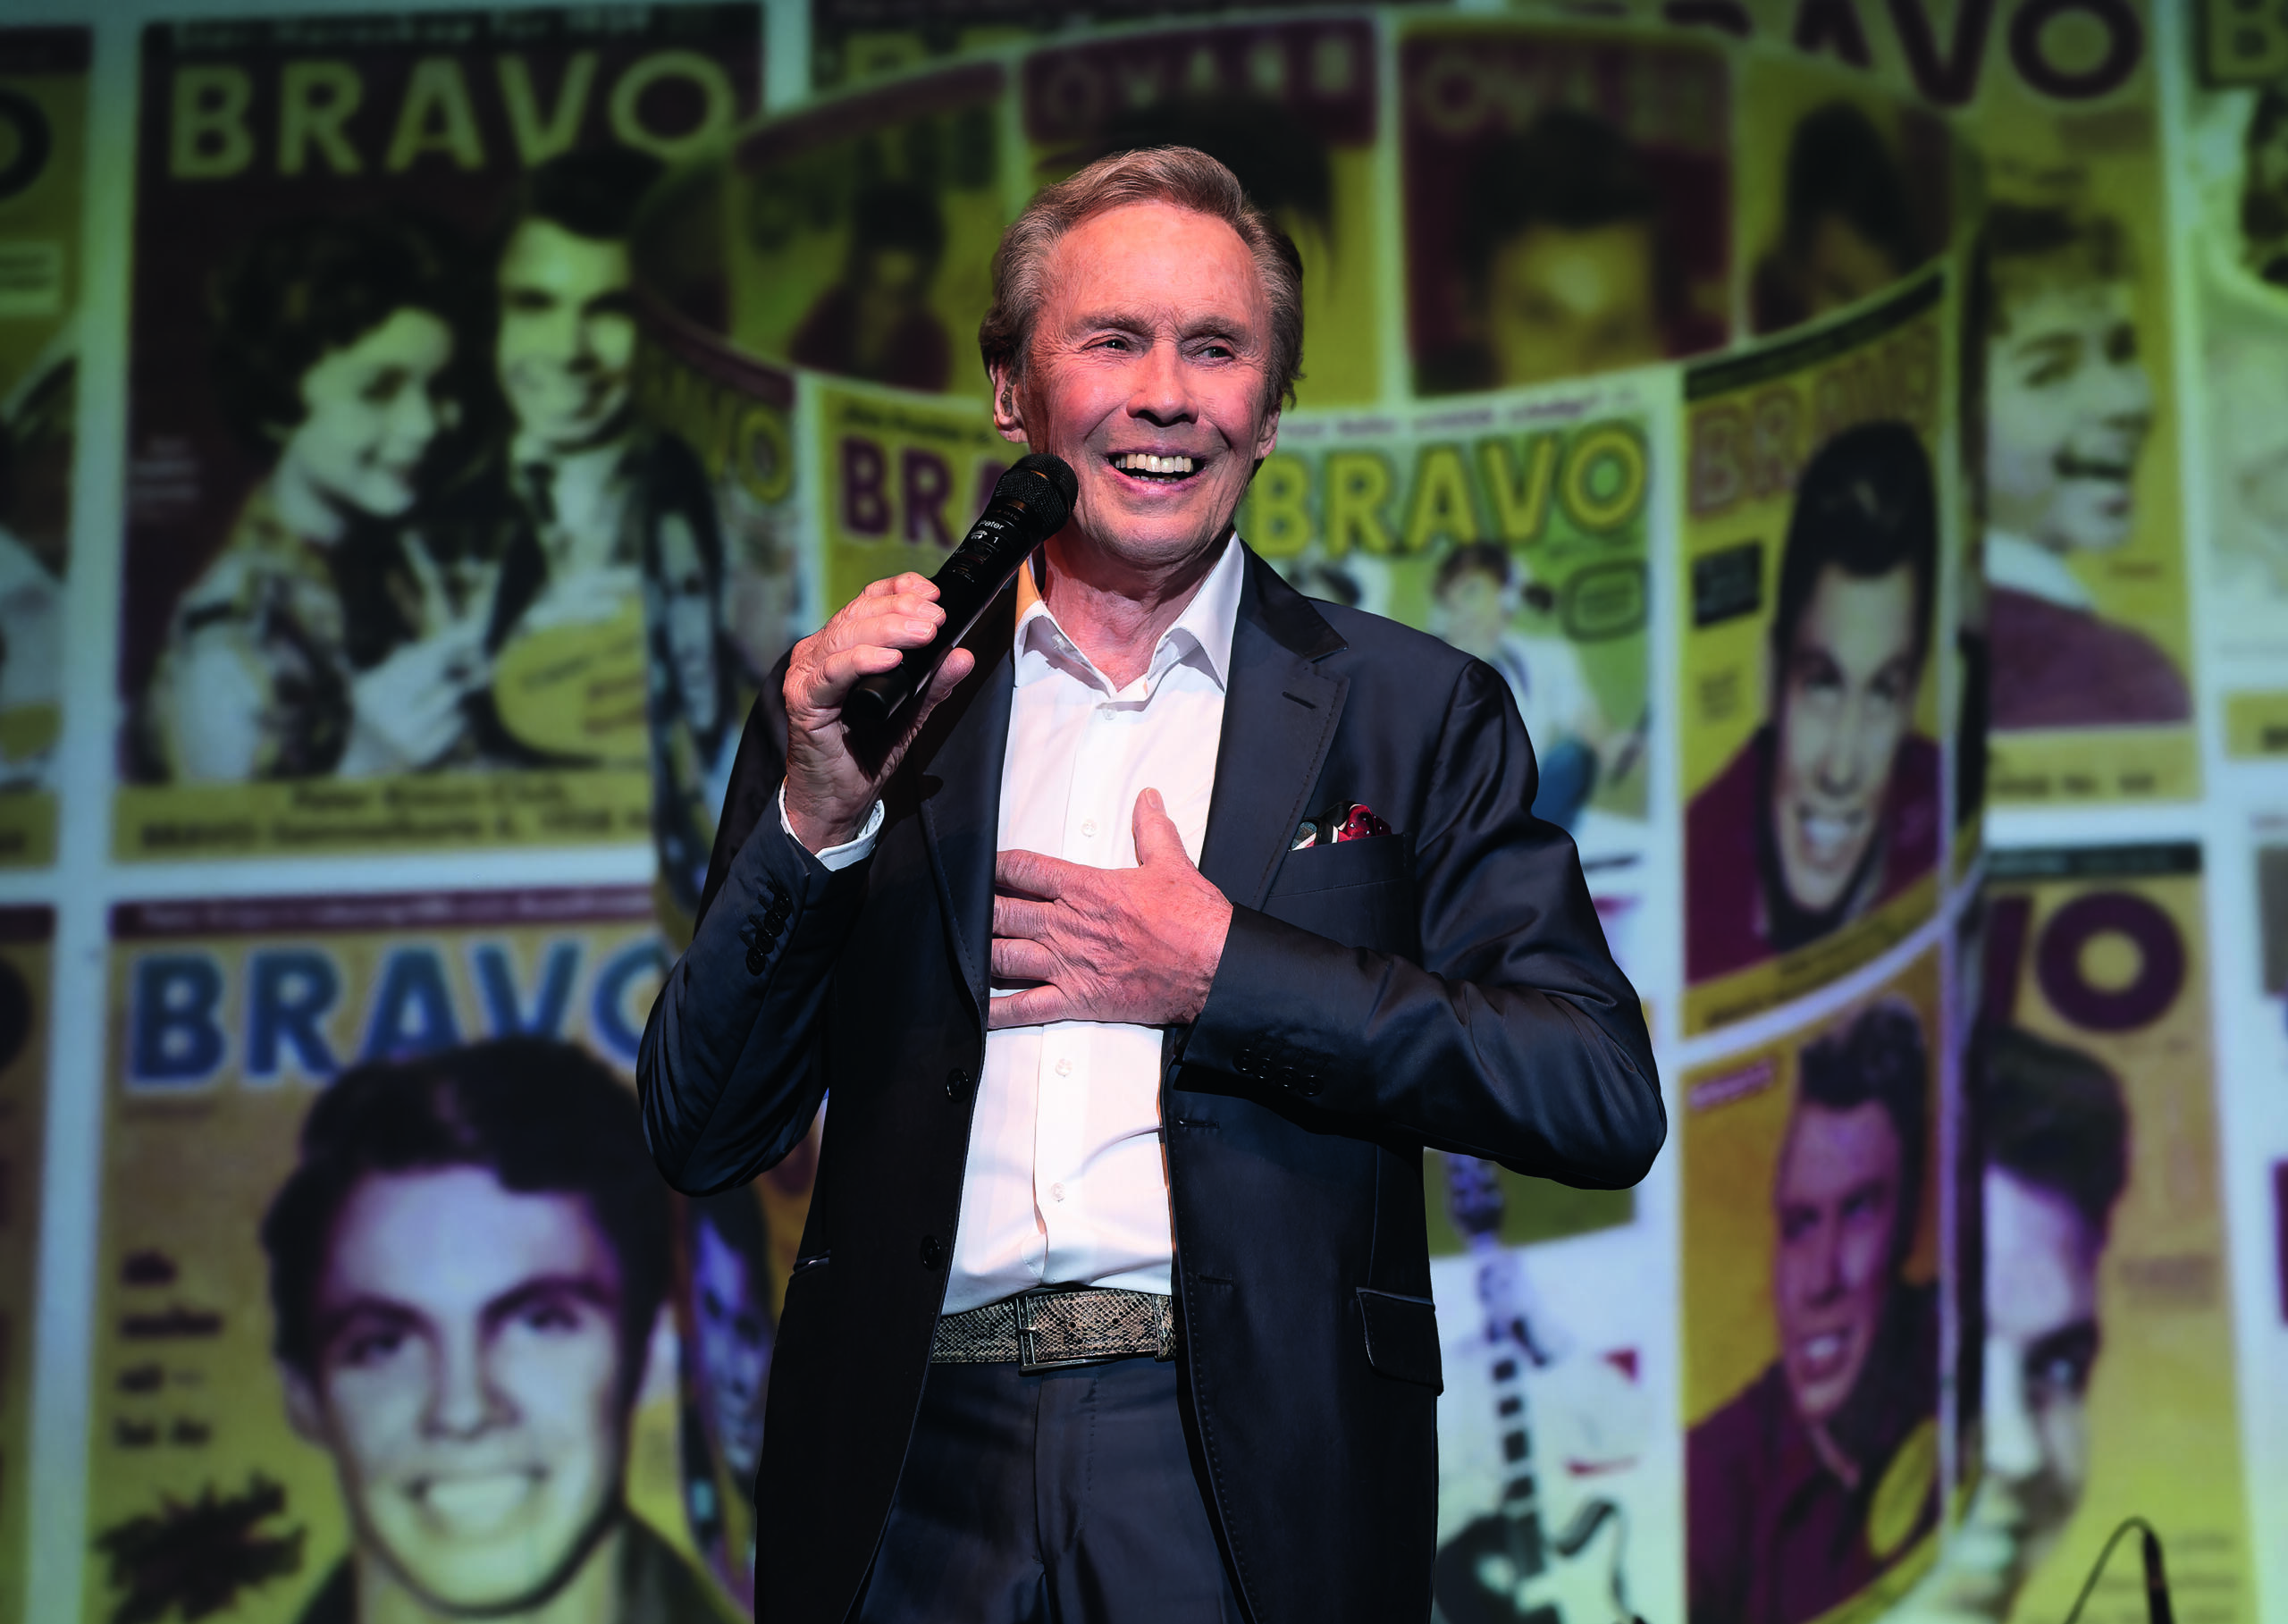 Der Sänger Peter Kraus steht in einem Anzug mit Mikrofon in der Hand auf einer Bühne. Im Hintergrund sind Projektionen von alten Bravo-Covers zu sehen.